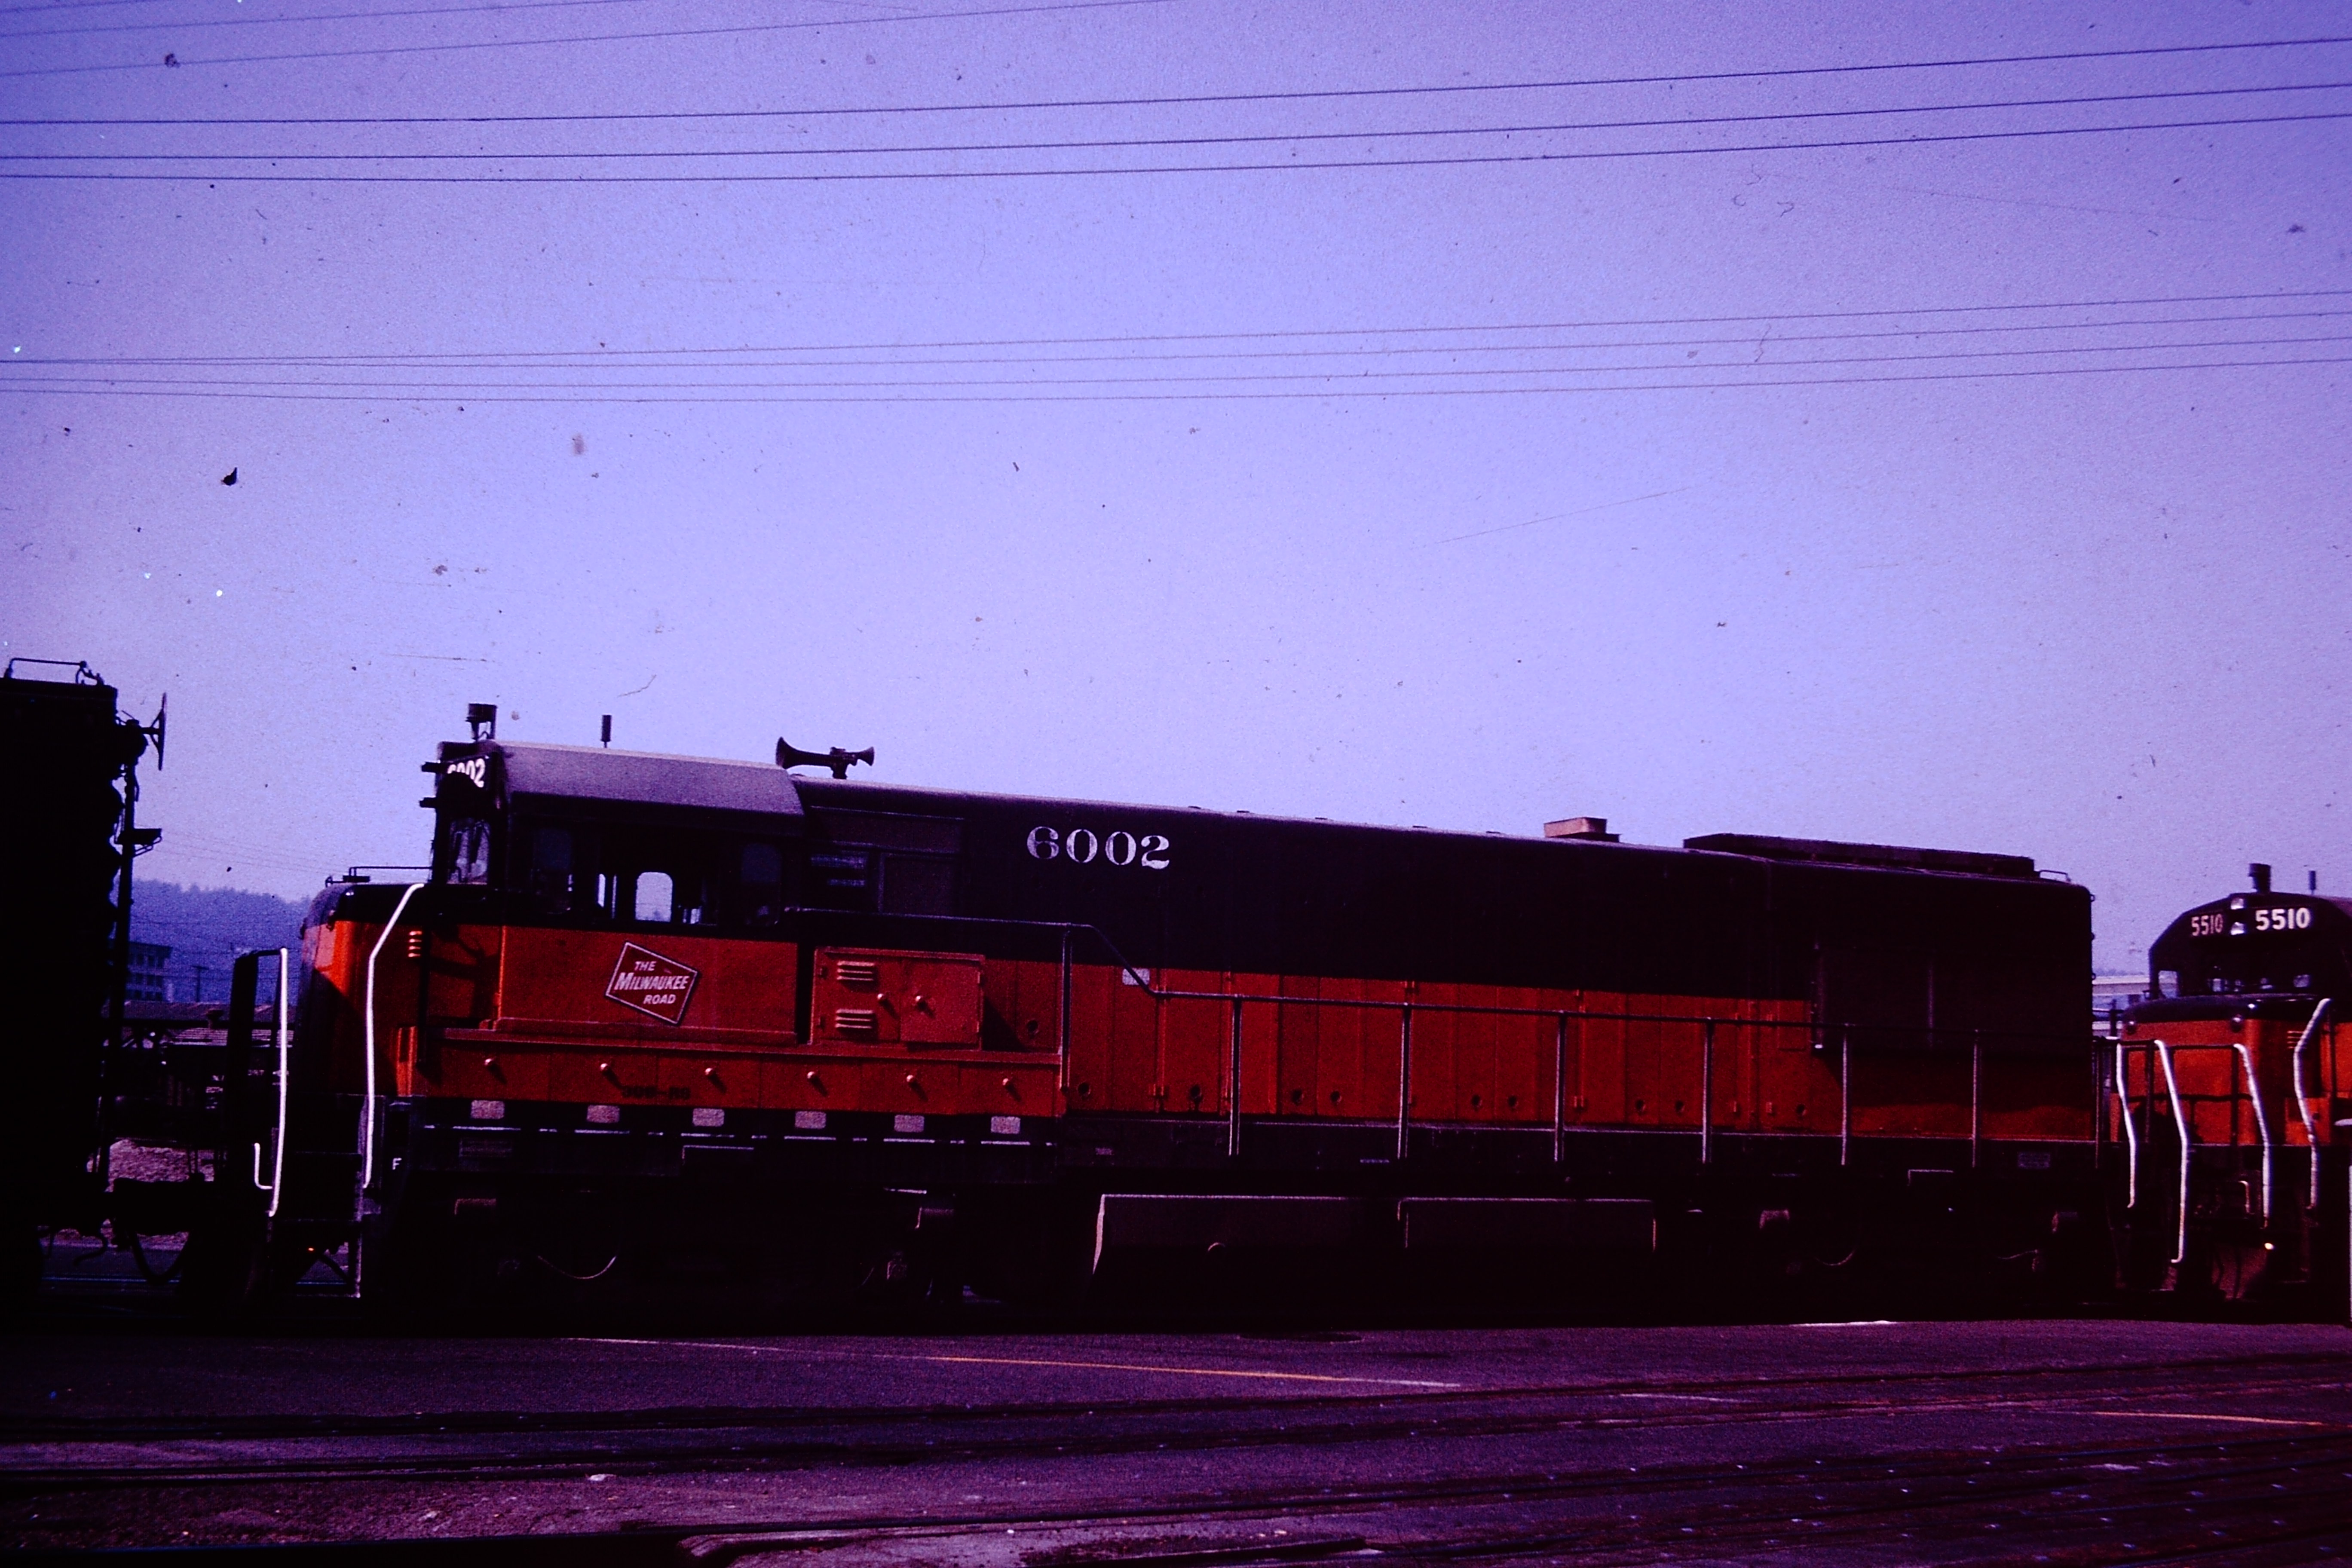 Milwaukee Railroad engine number 6002 